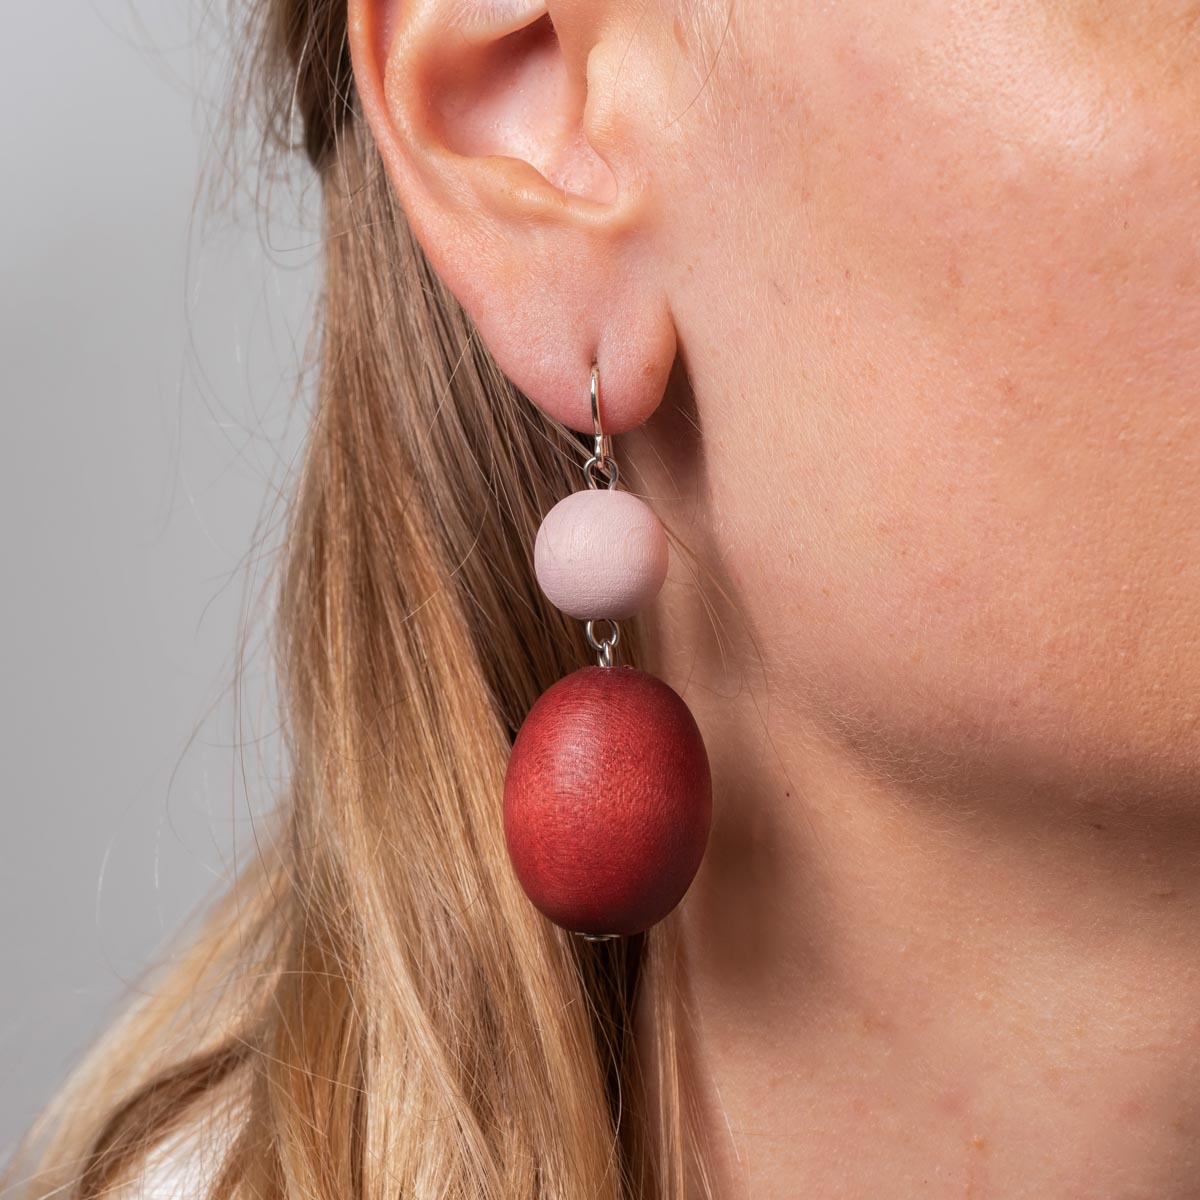 Taateli earrings, red